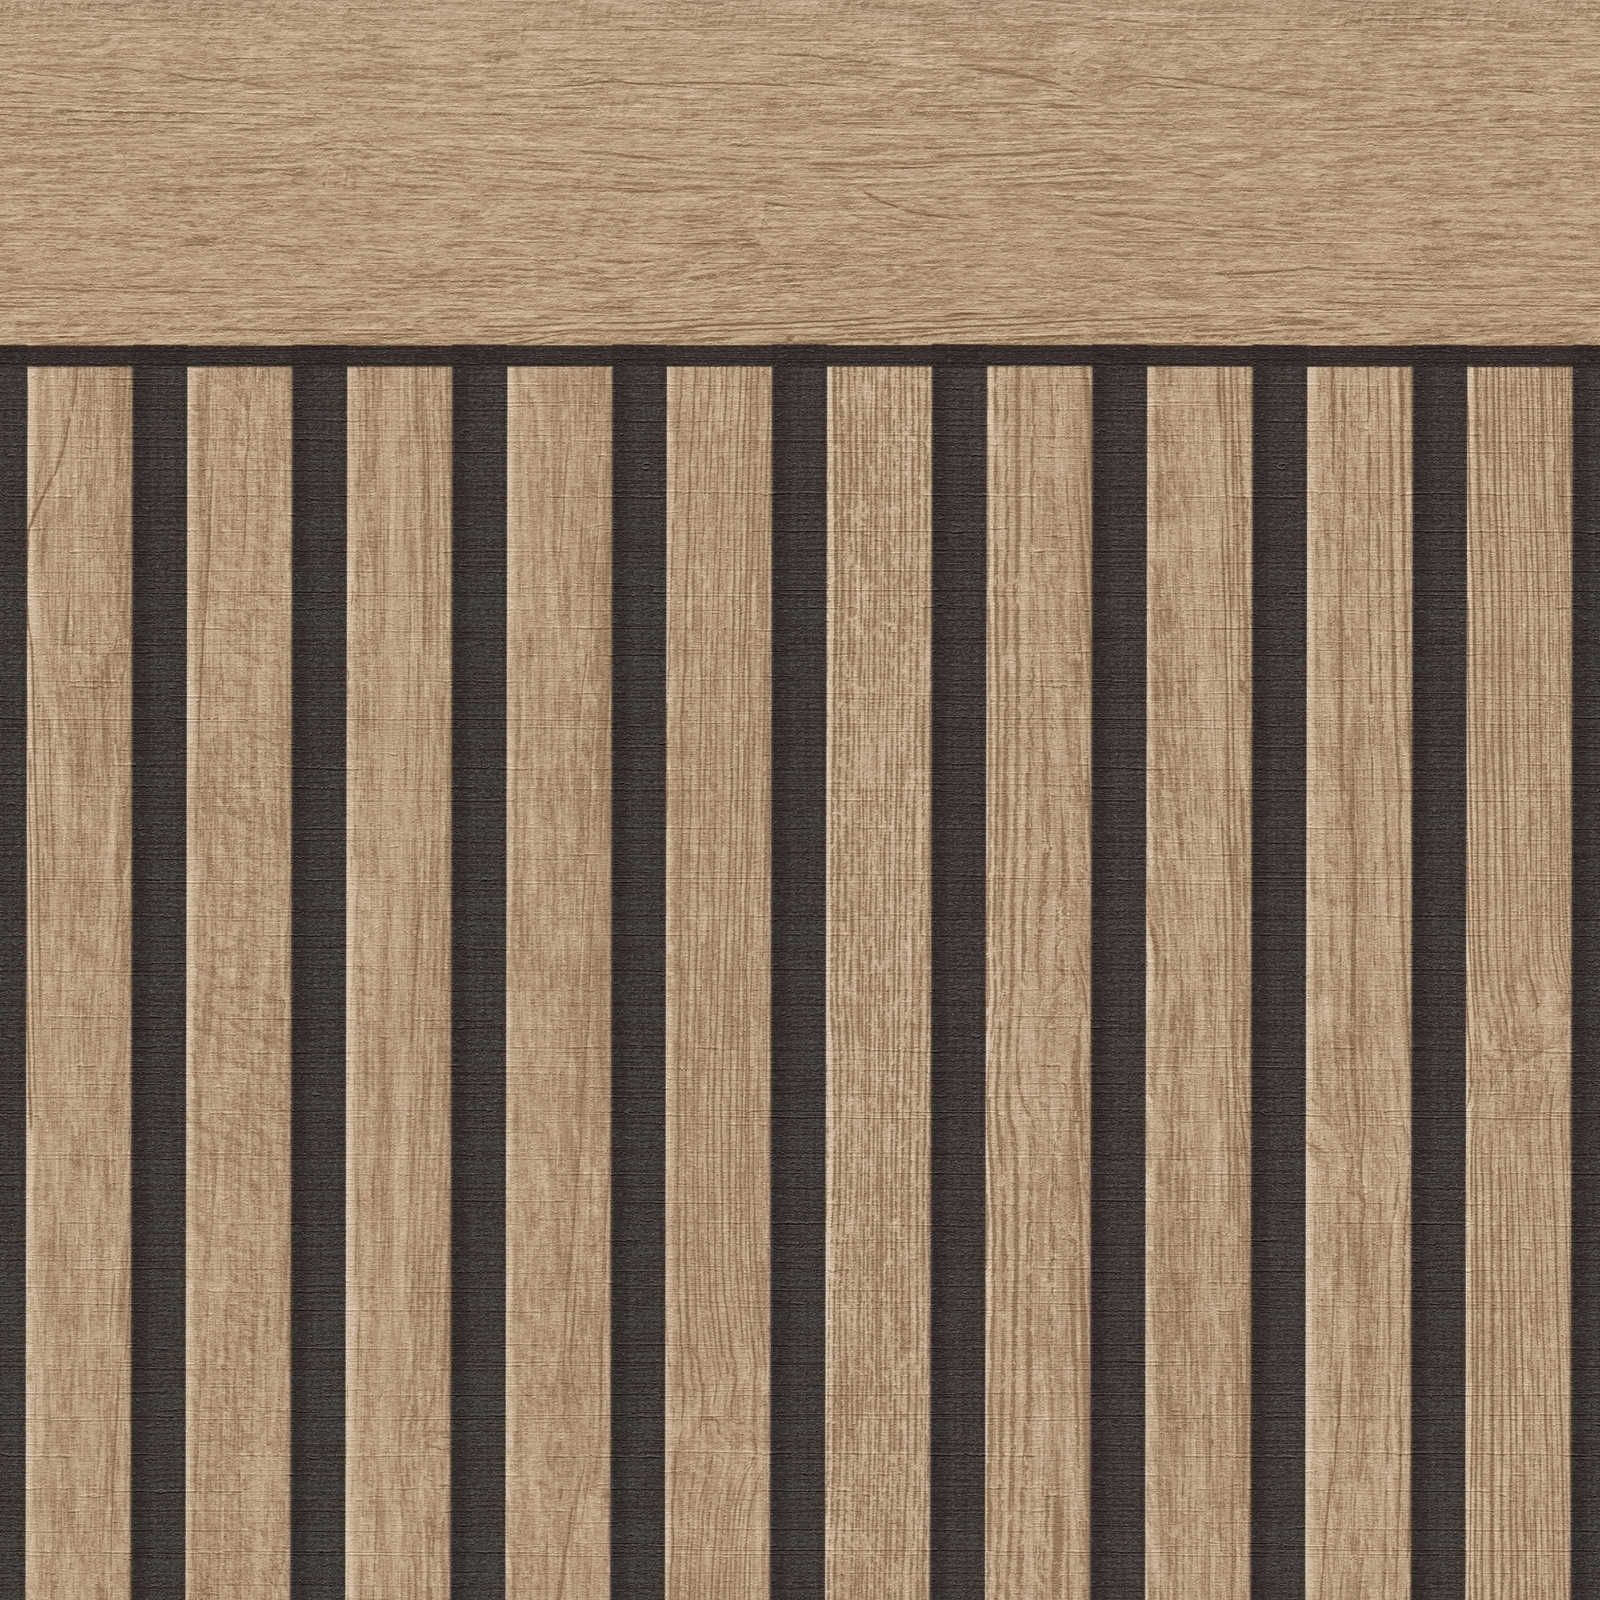 Wandvlies met realistisch akoestisch paneelpatroon van hout - beige, bruin
